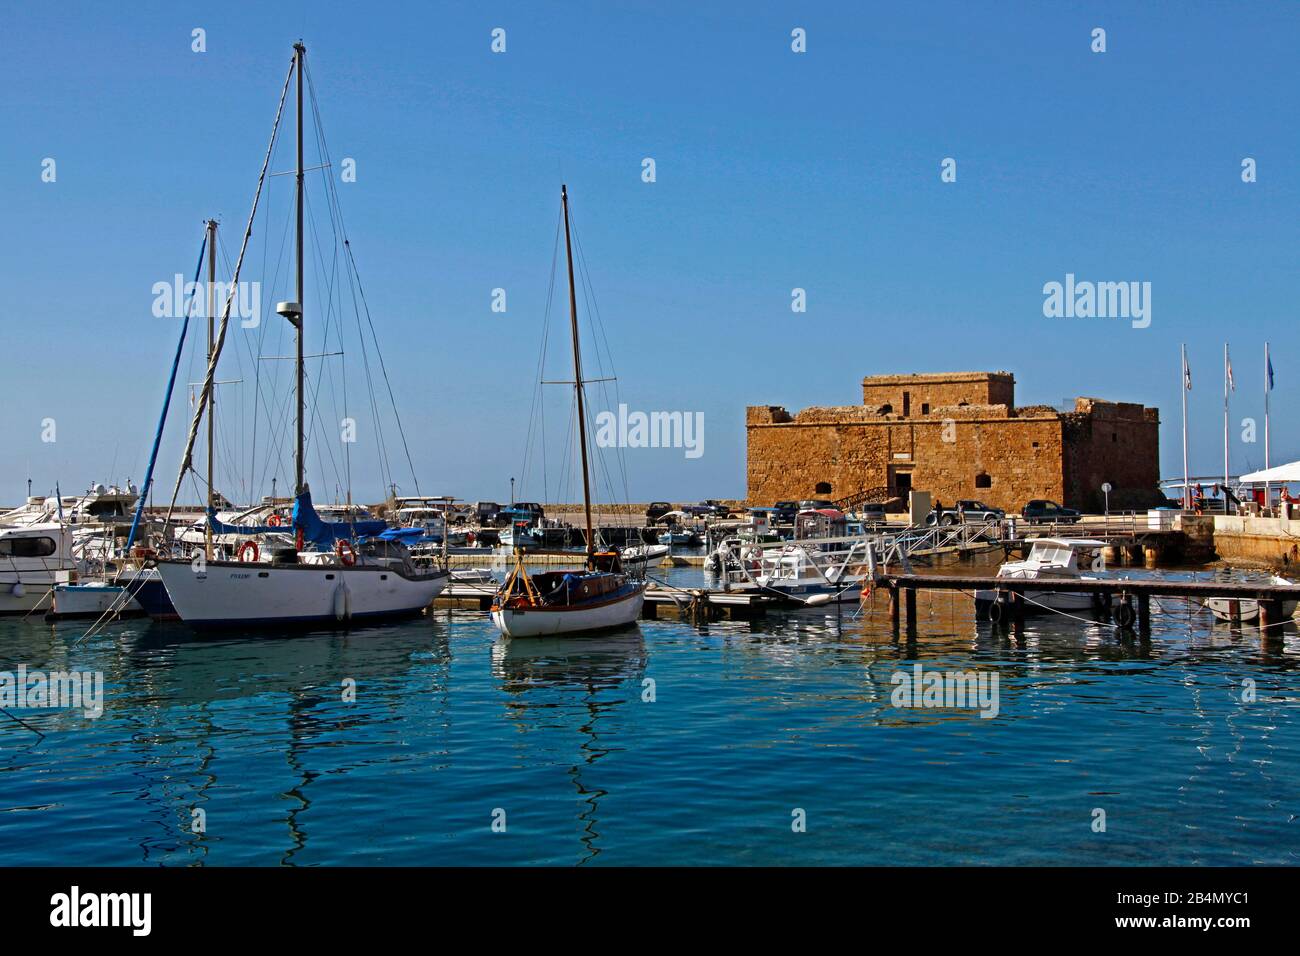 Paphos, porto di pesca, marina, antico porto forte, barche da pesca, barche a vela, Cipro, parte greca Foto Stock